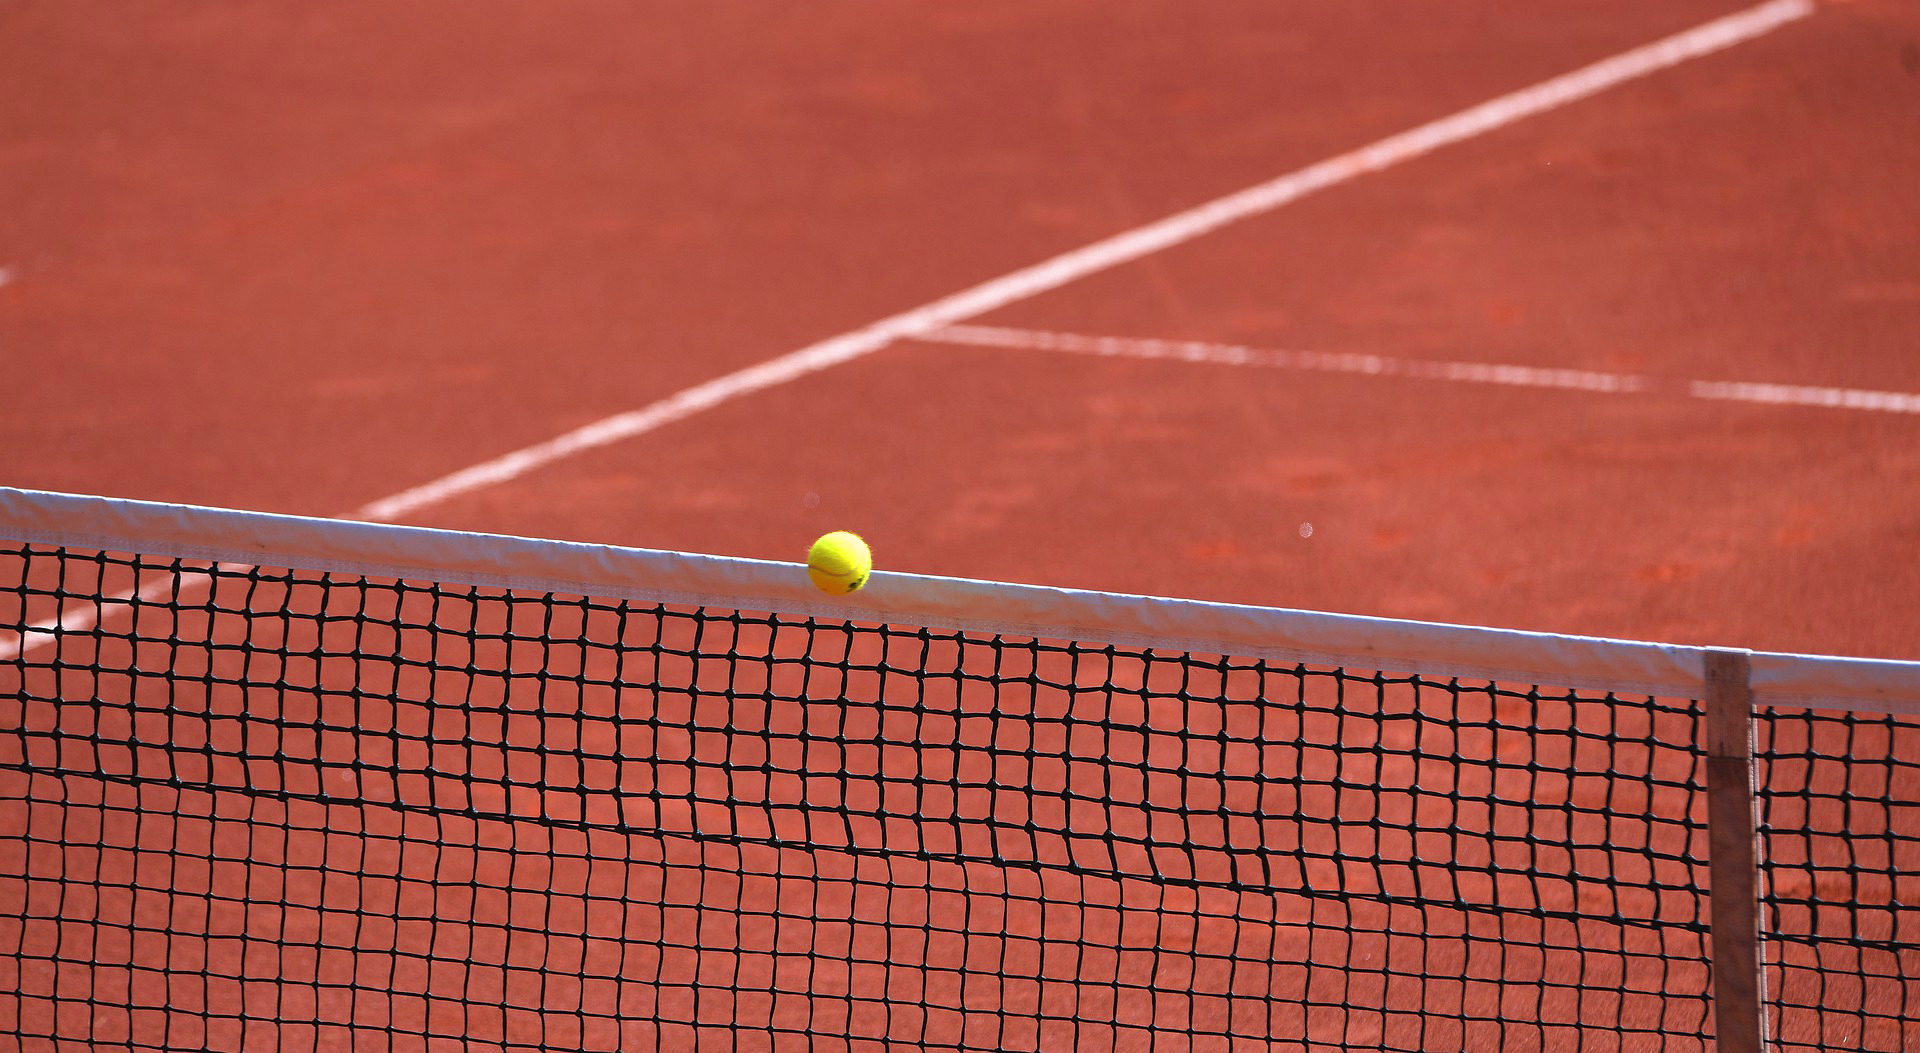 Tennisball über Netz Ausschnitt